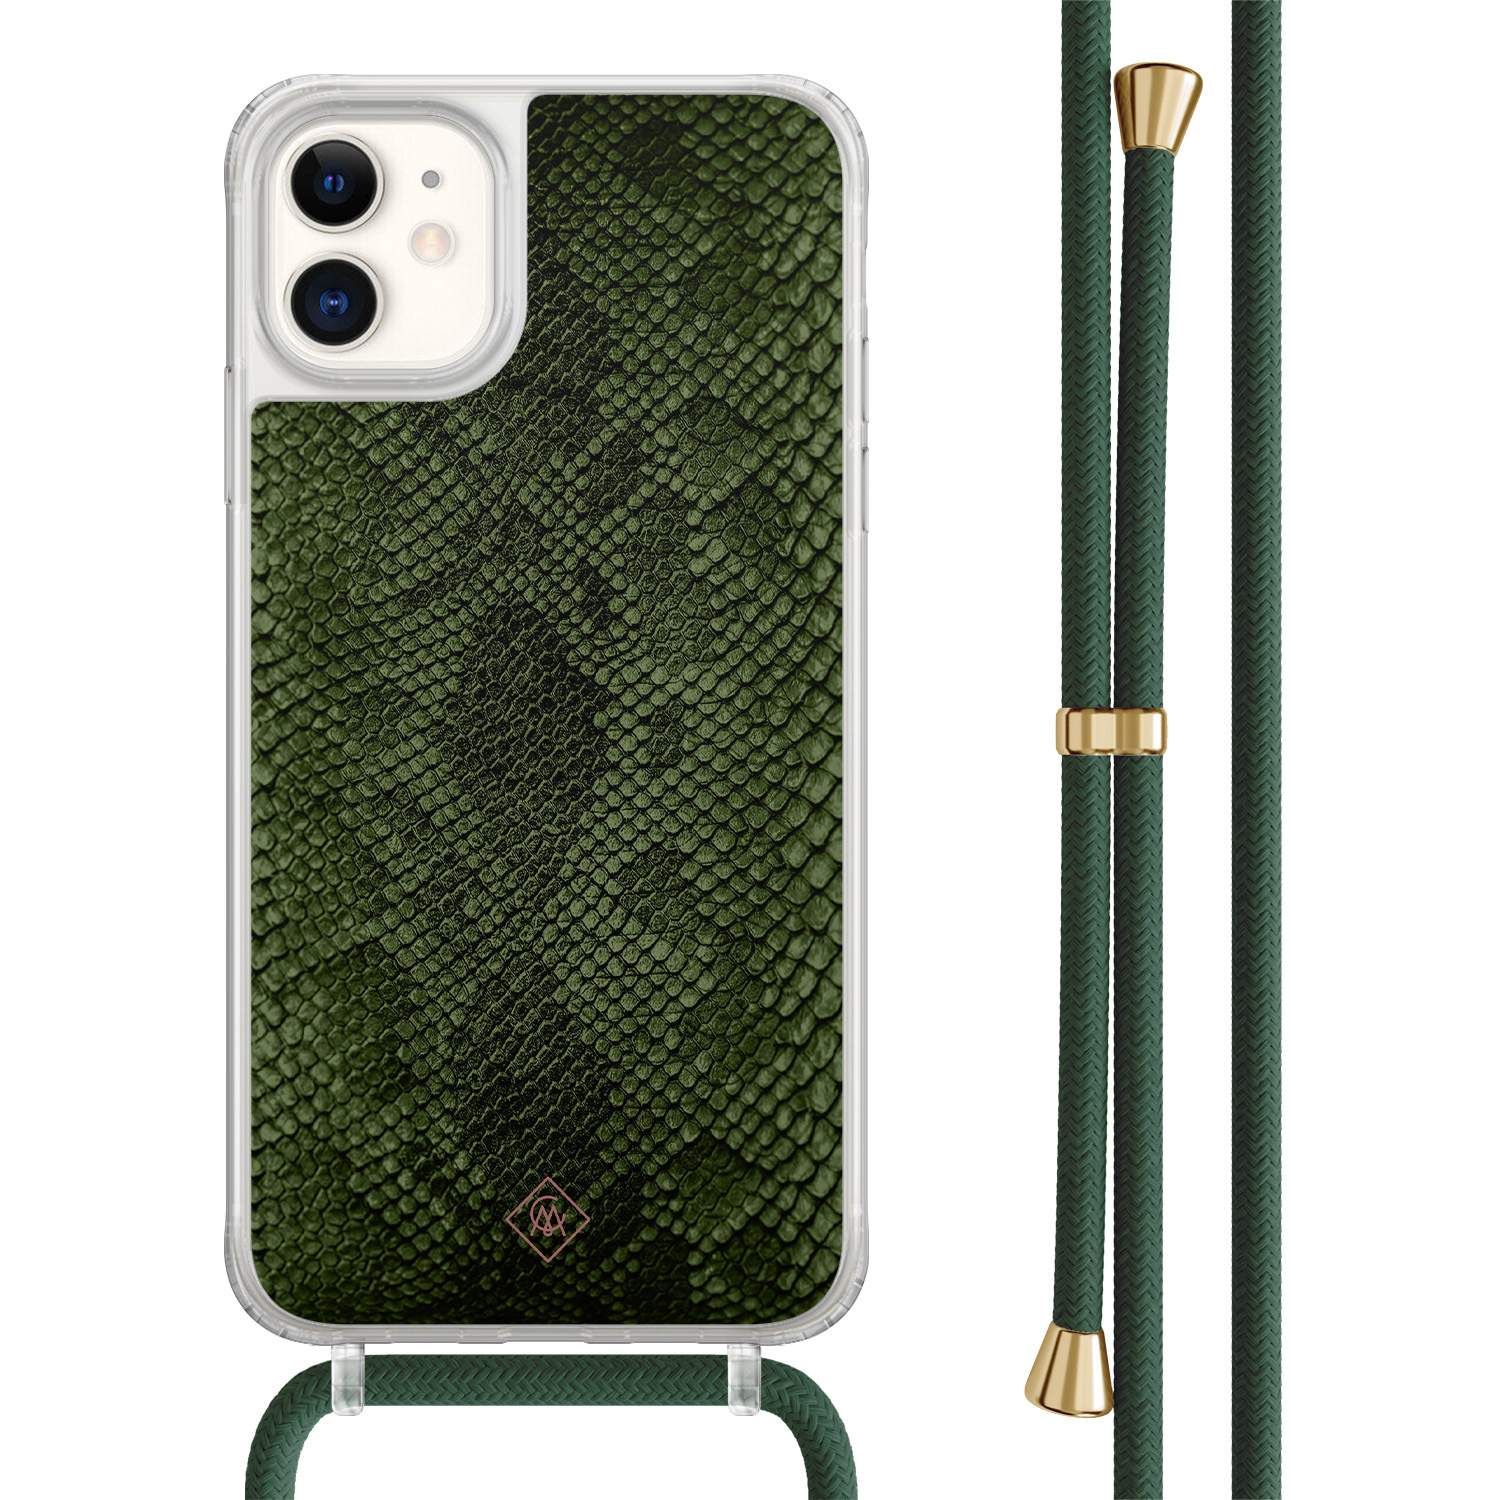 Casimoda® - iPhone 11 hoesje met groen koord - Snake mix - Afneembaar koord - TPU/acryl